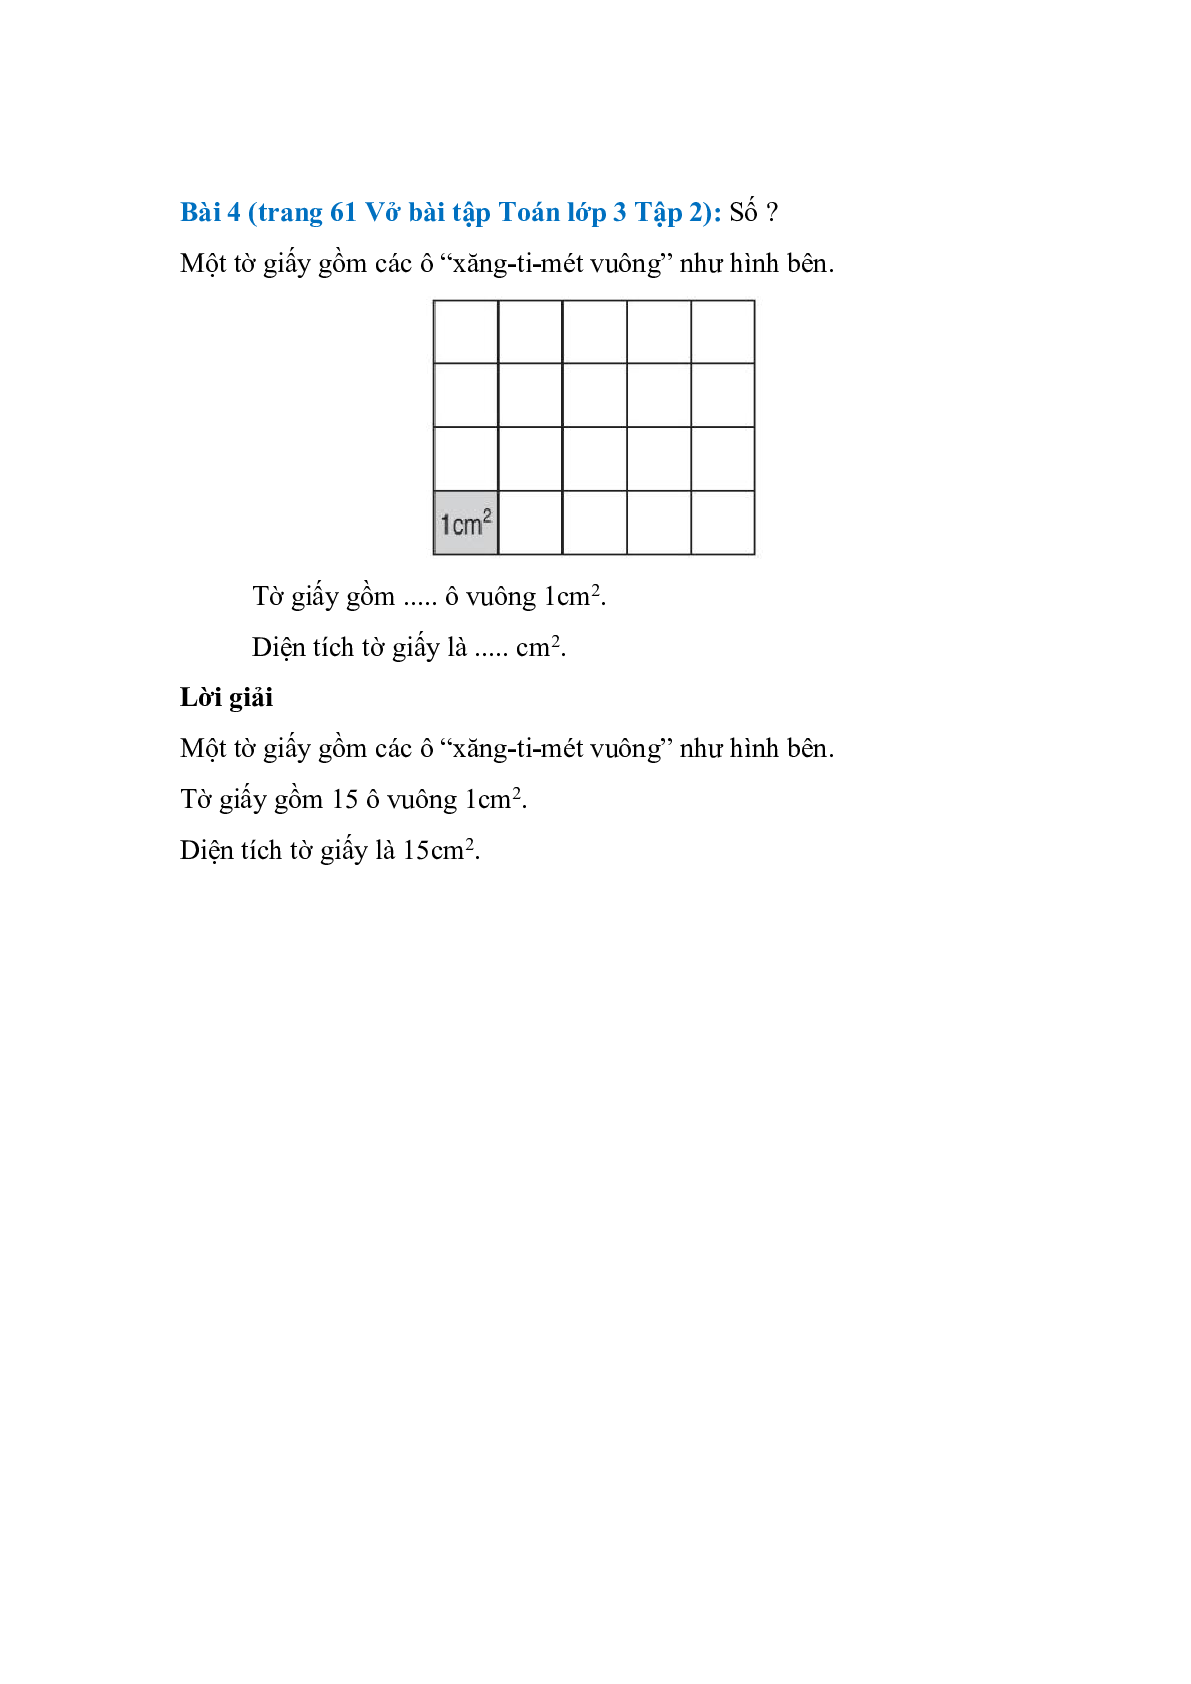 Vở bài tập Toán lớp 3 Tập 2 trang 61 Bài 136: Đơn vị đo diện tích - Xăng-ti-mét vuông  (trang 3)